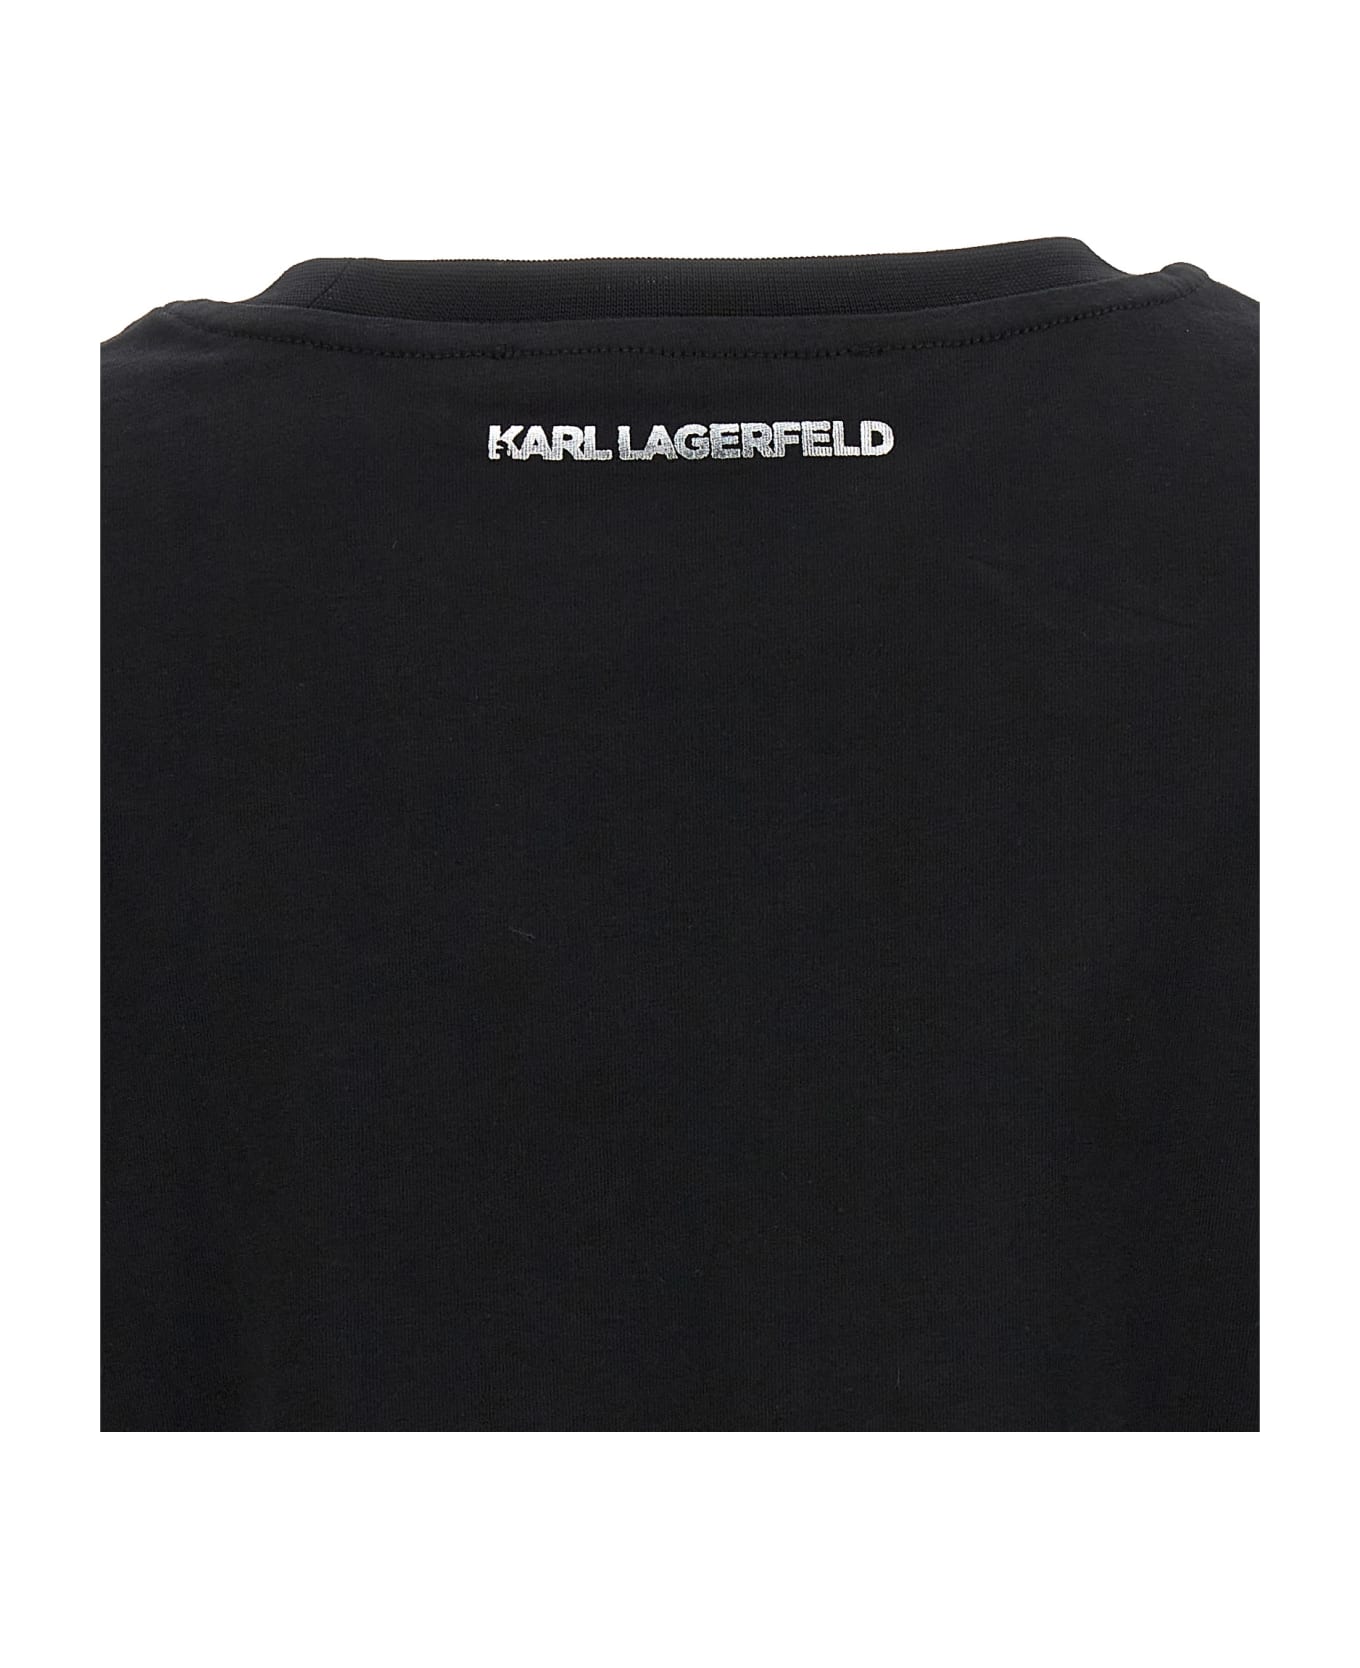 Karl Lagerfeld 'ikonik 2,0 Glitter' T-shirt - Black   Tシャツ